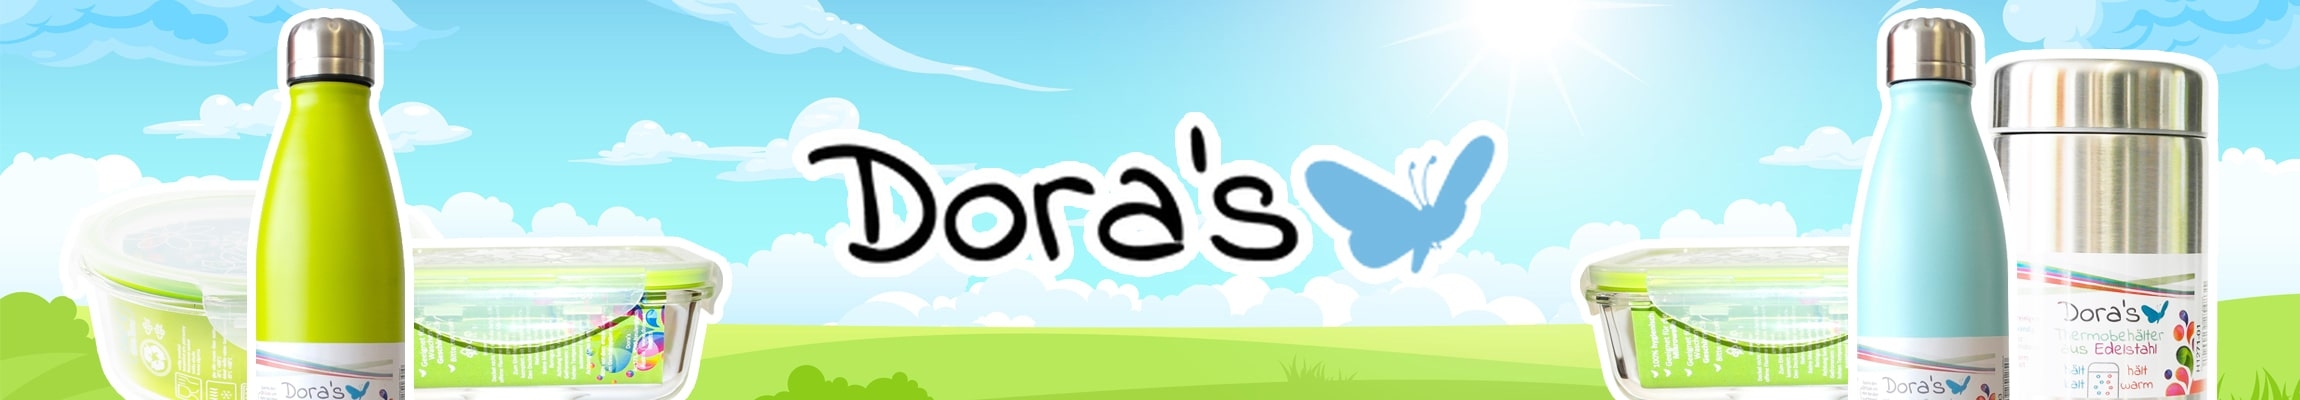 Dora's